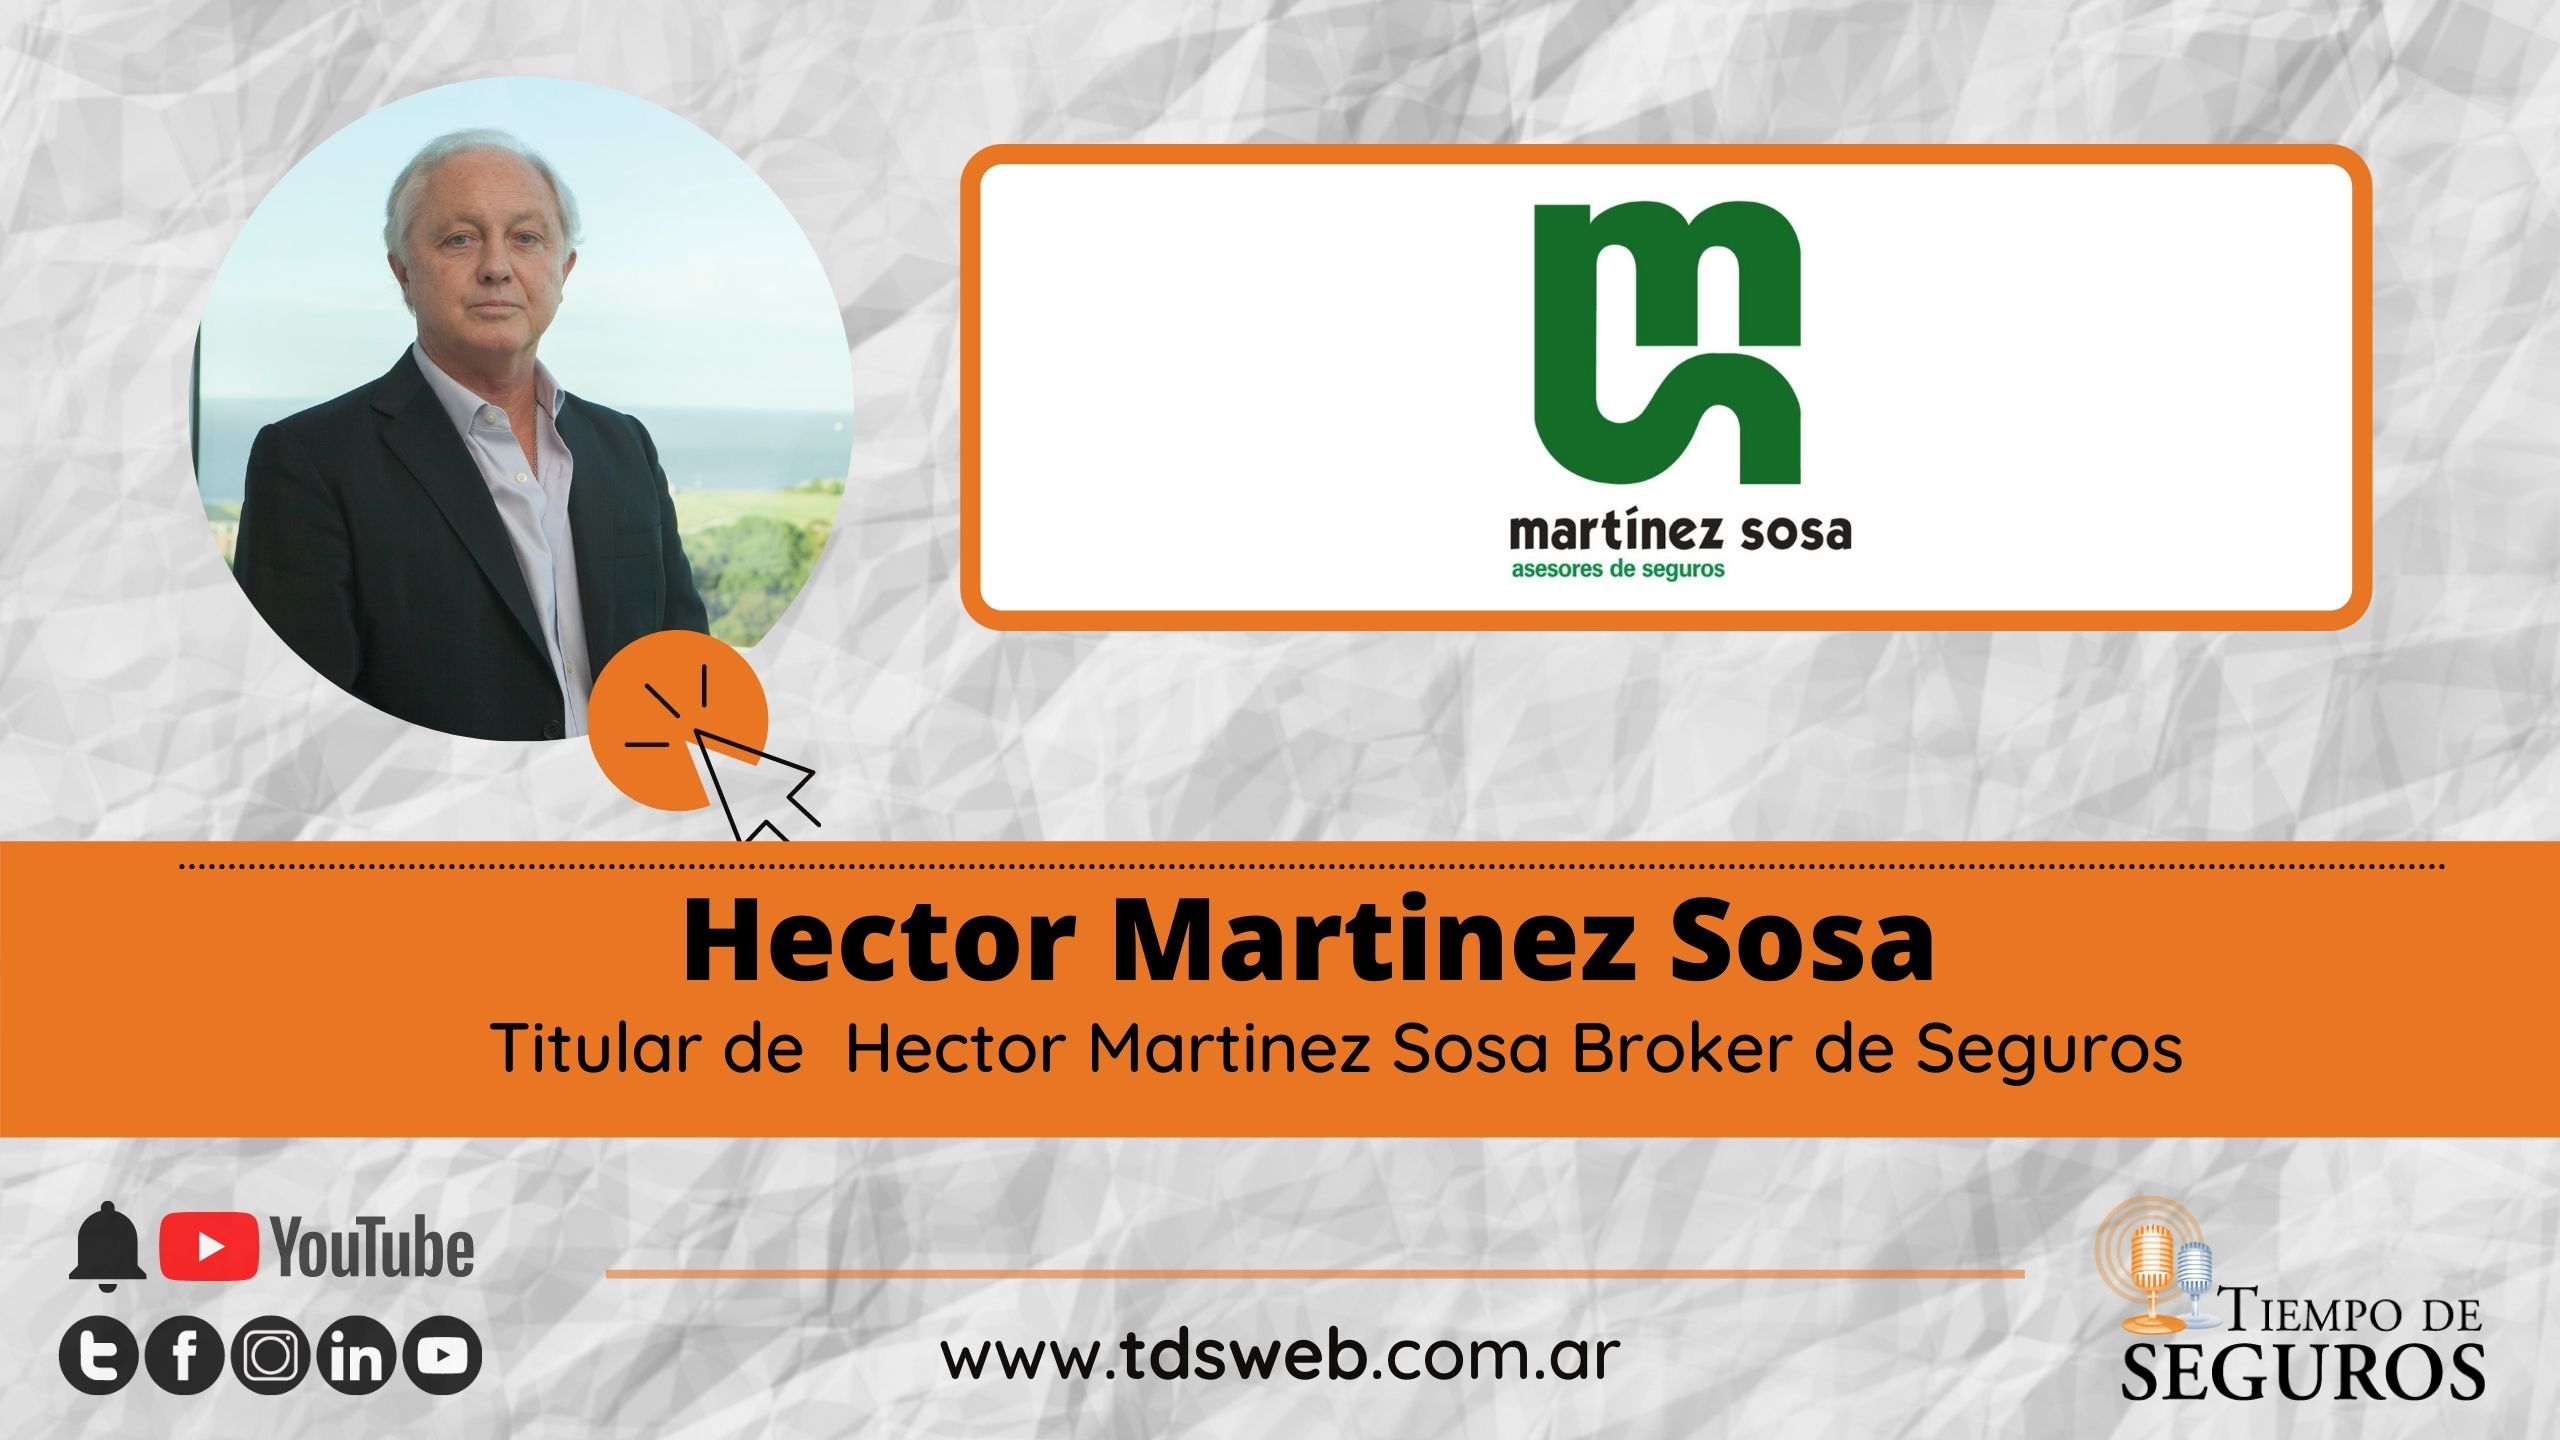 Entrevistamos a Héctor Martínez Sosa, titular de H.M. SOSA Y CÍA., uno de los mayores brokers de capital nacional, que está a punto de cumplir 50 años de historia, continúa creciendo y va por más.